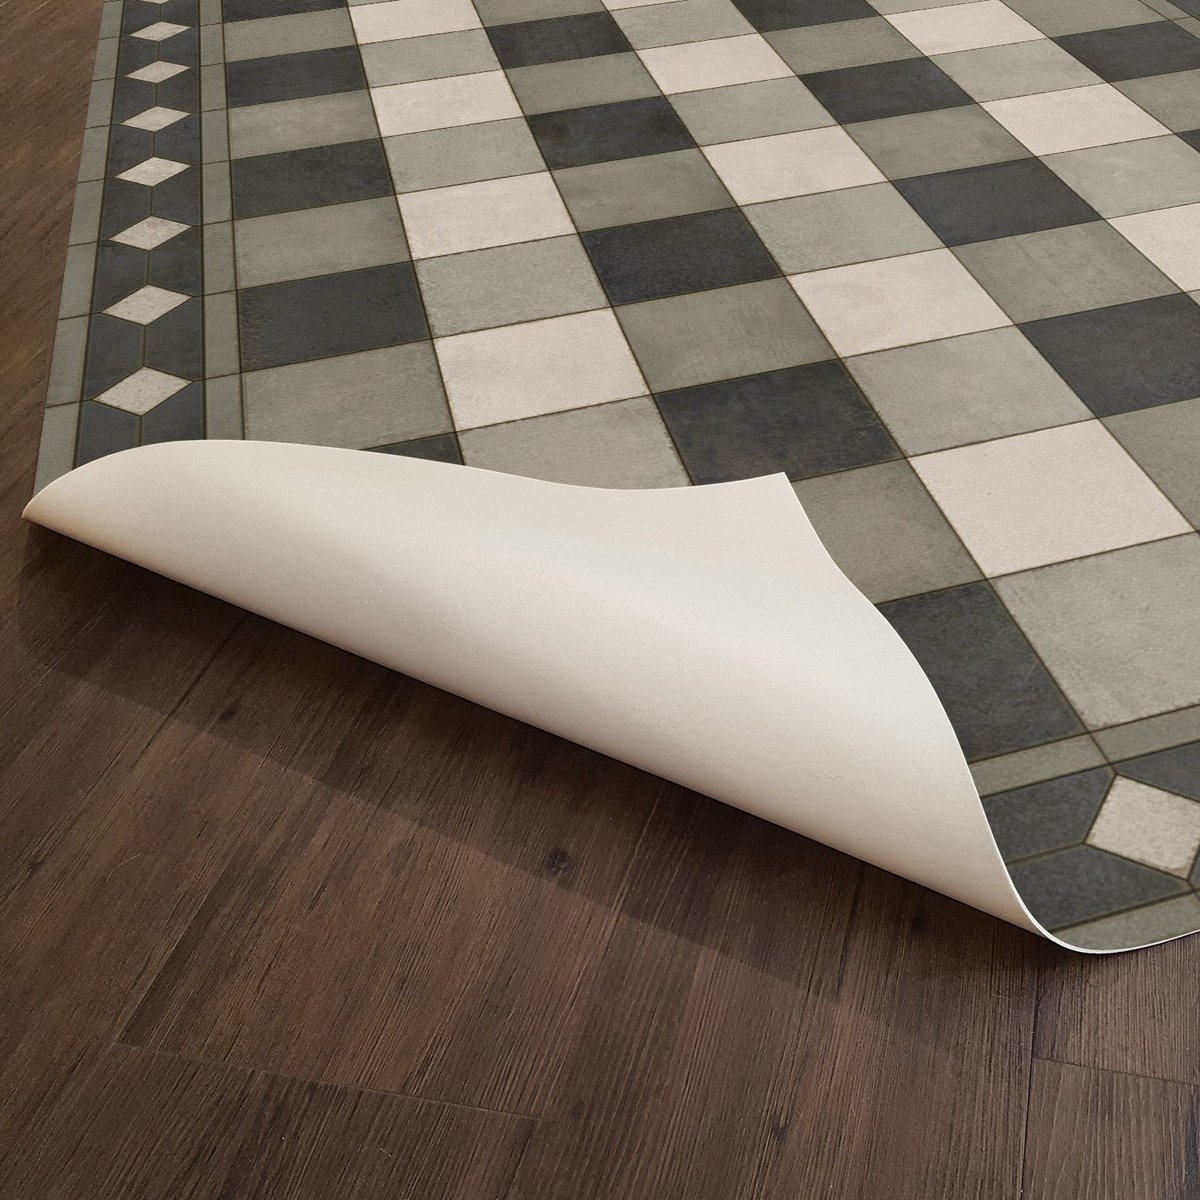 Vintage Tile Vinyl Floor Mat  Kitchen mats floor, Vinyl floor mat